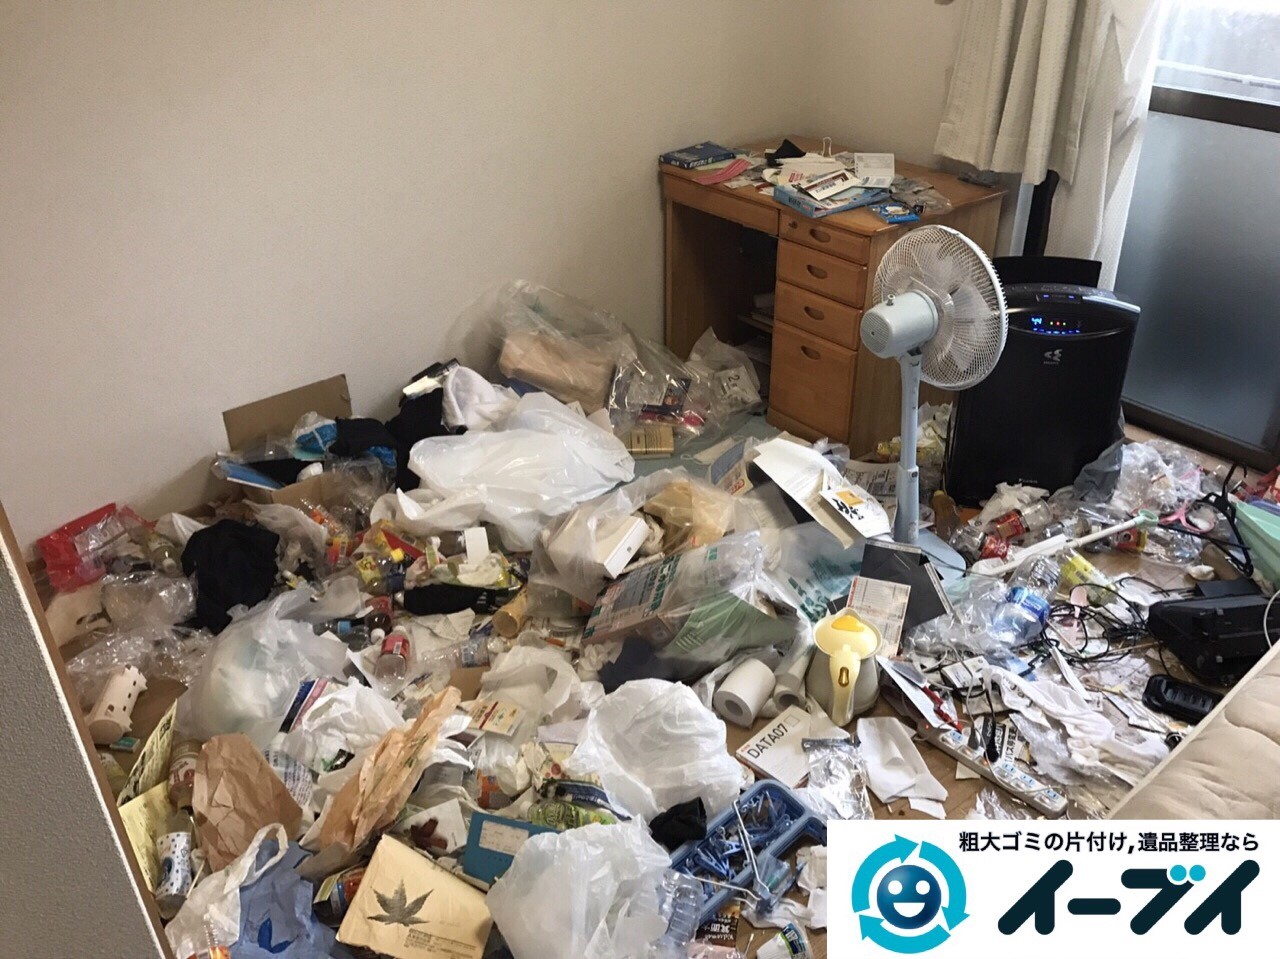 2017年5月31日大阪府箕面市で生活ゴミが散乱しているゴミ屋敷の片付けをしました。写真1